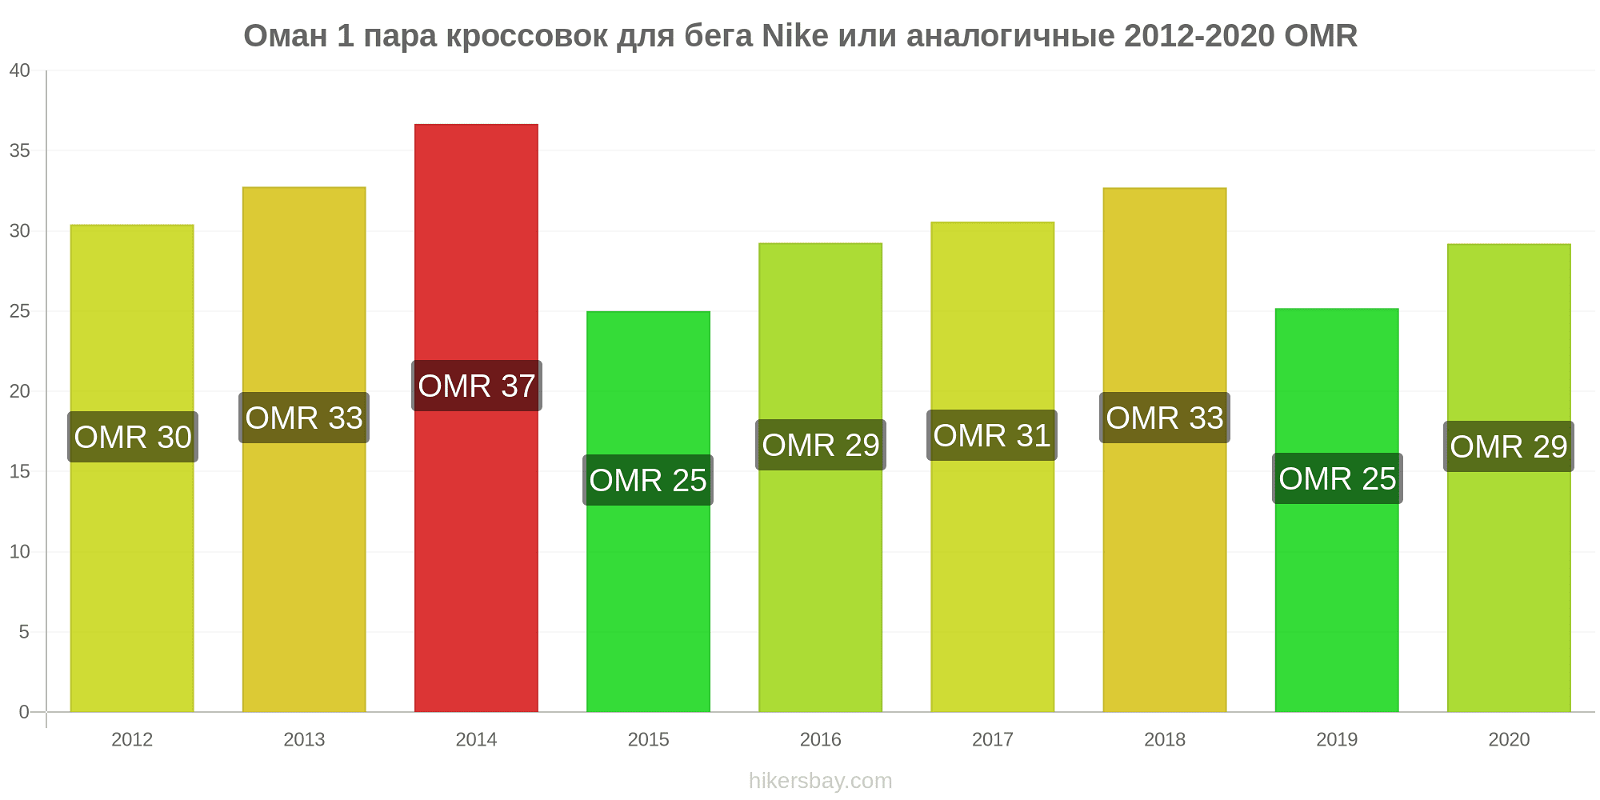 Оман изменения цен 1 пара кроссовок для бега Nike или аналогичные hikersbay.com